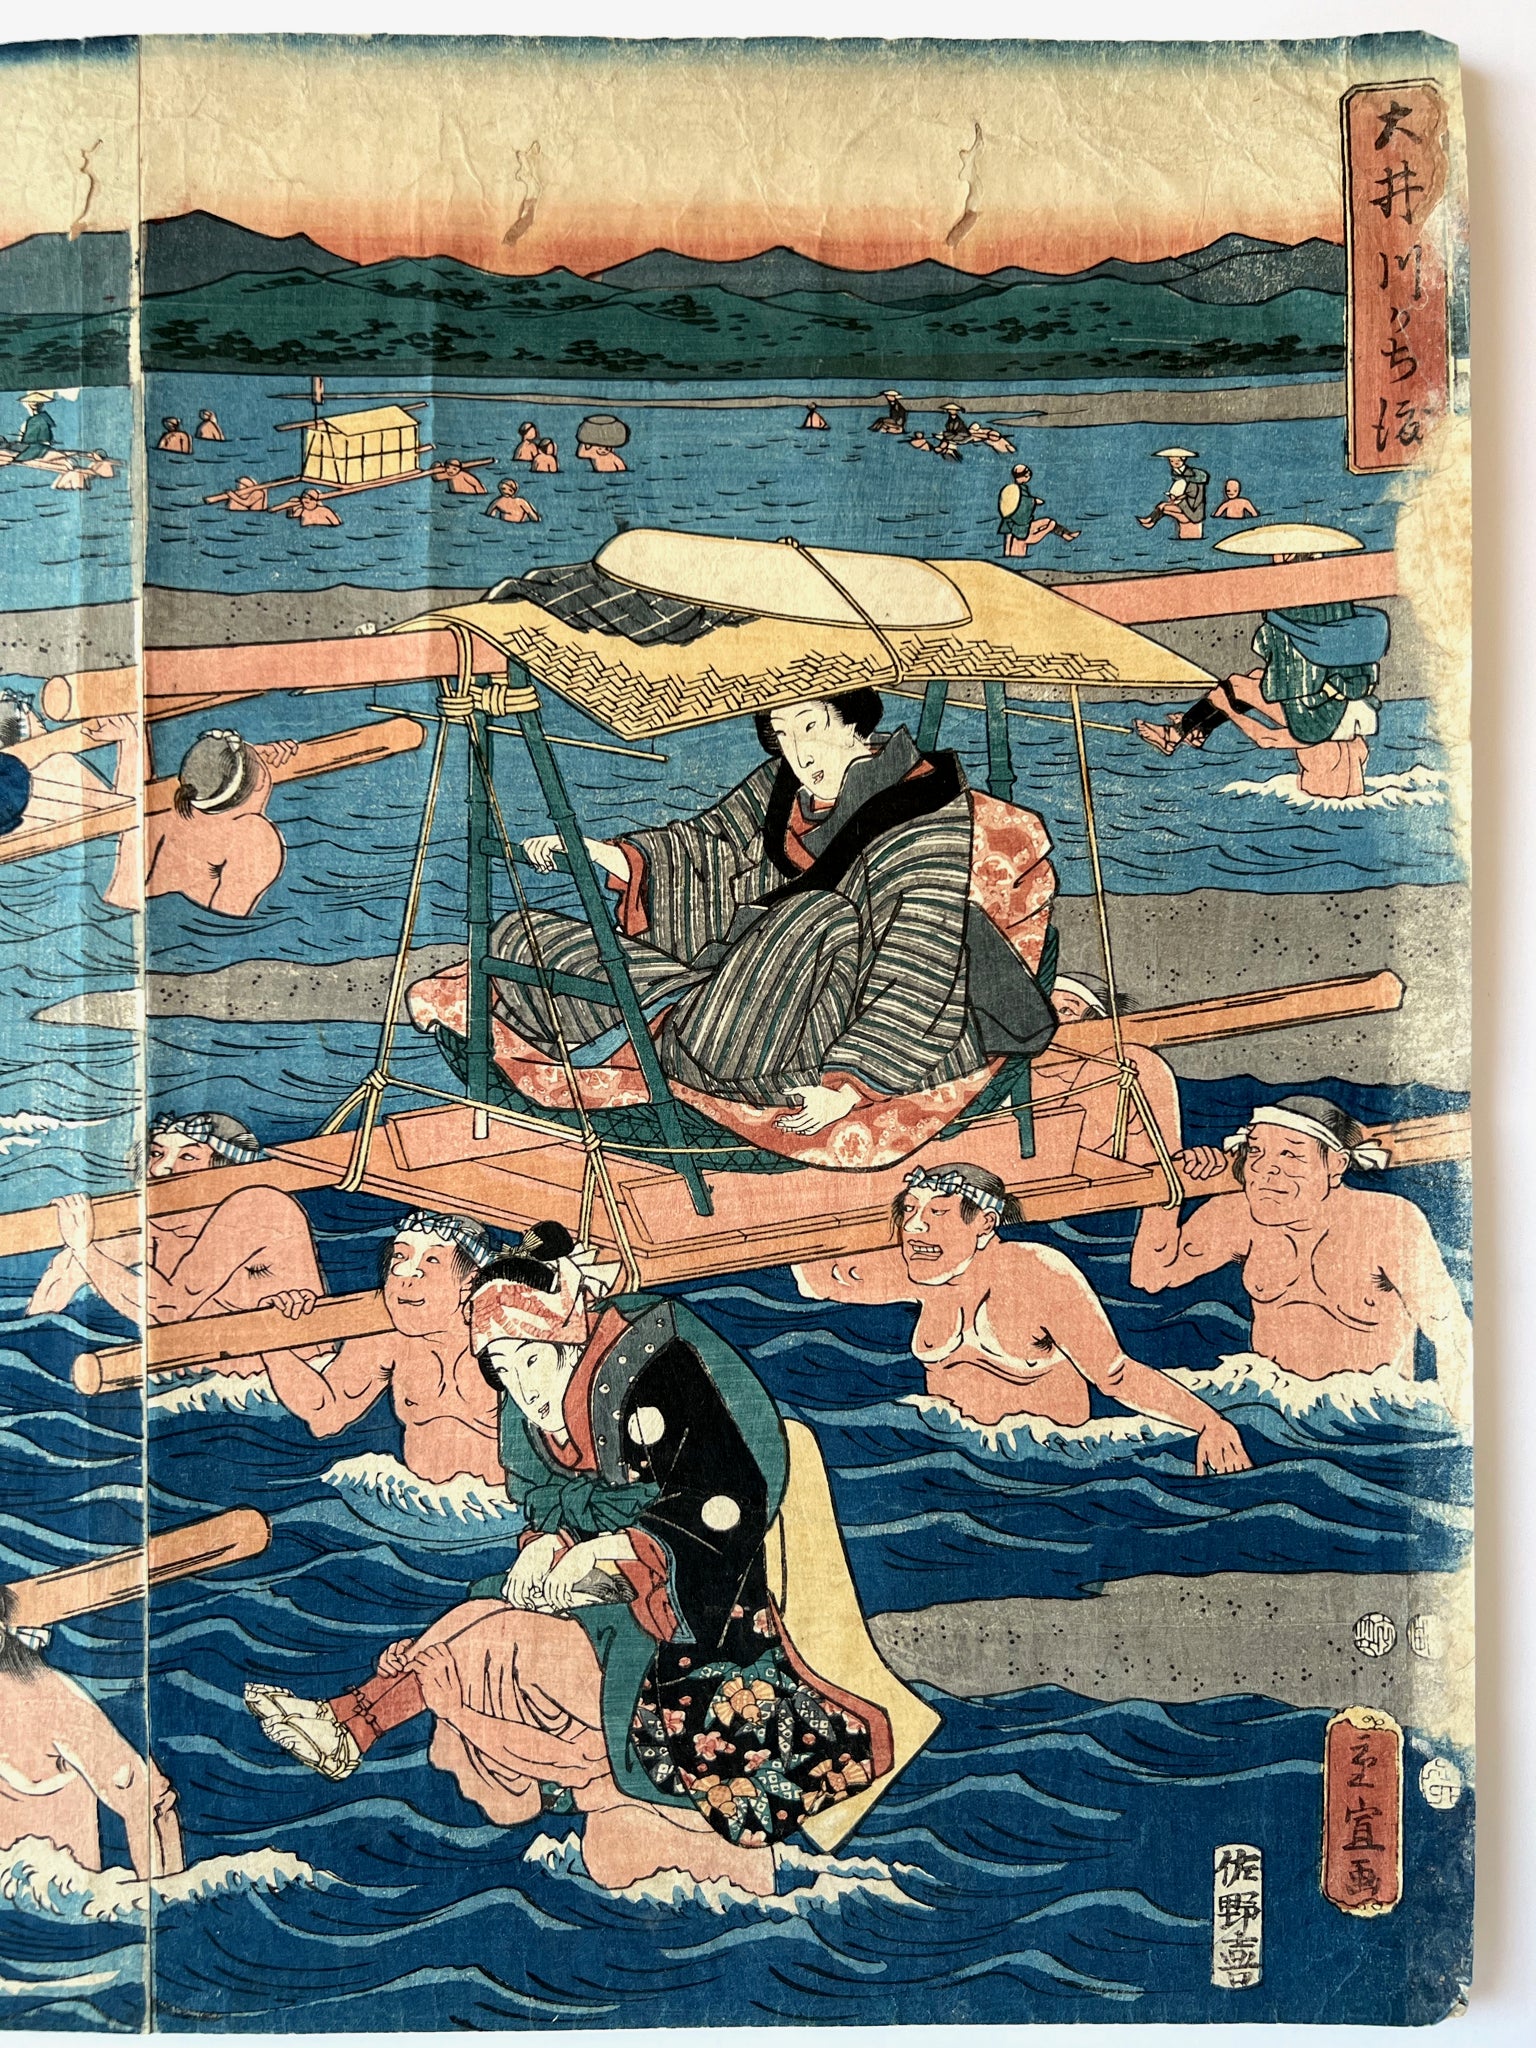 estampe japonaise traversée de rivière par femmes en kimono et leurs porteurs, traversée sur épaules et palanquin 